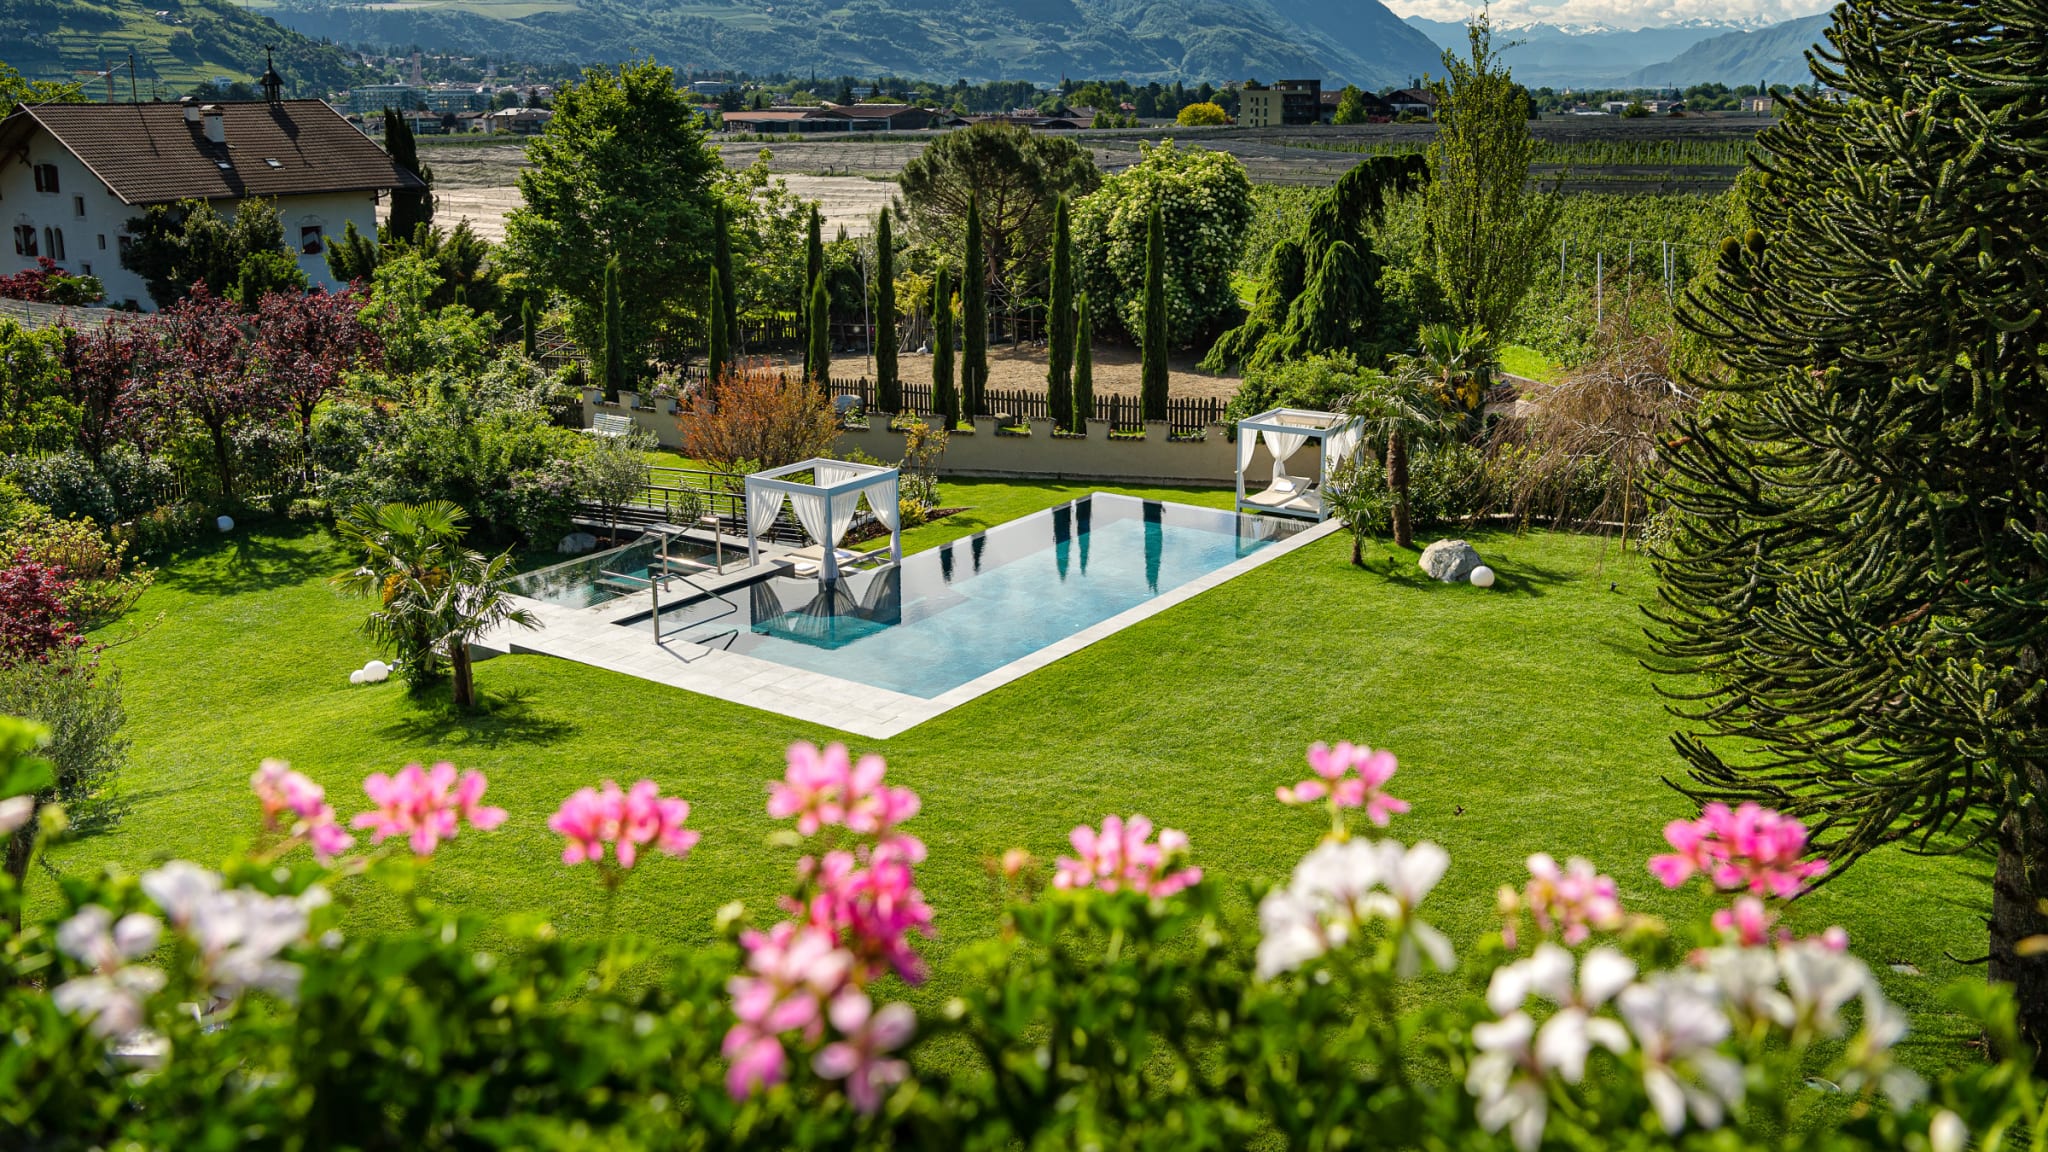 Fayn Hotel Garden Retreat im Meraner Land, Südtirol